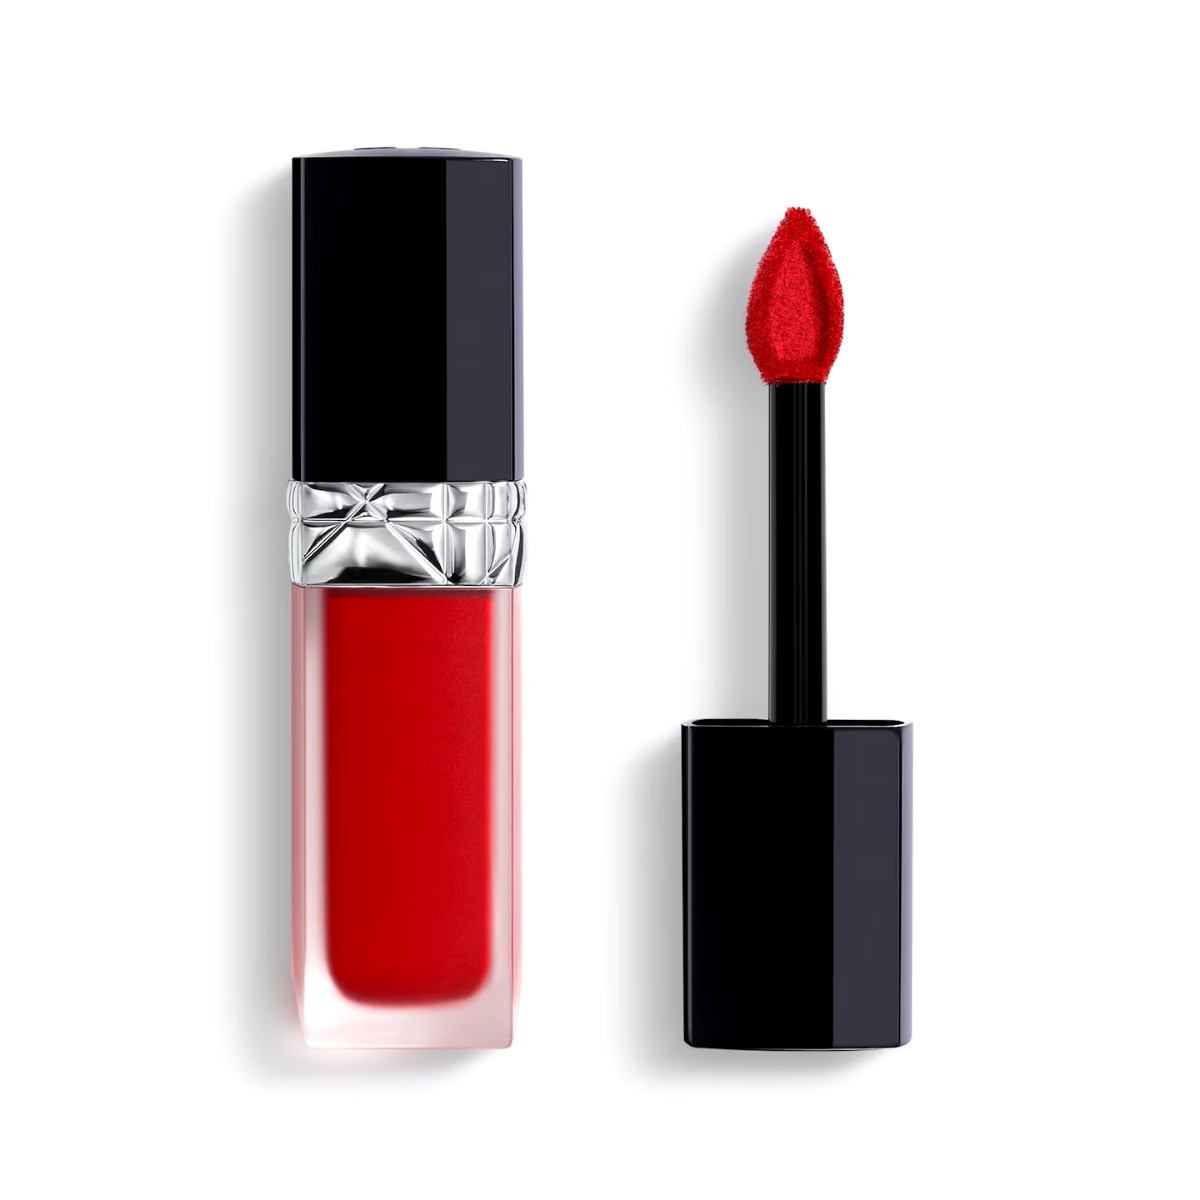  cosme lipstick tin trip Dior rouge Dior four ever liquid four e burglar m760